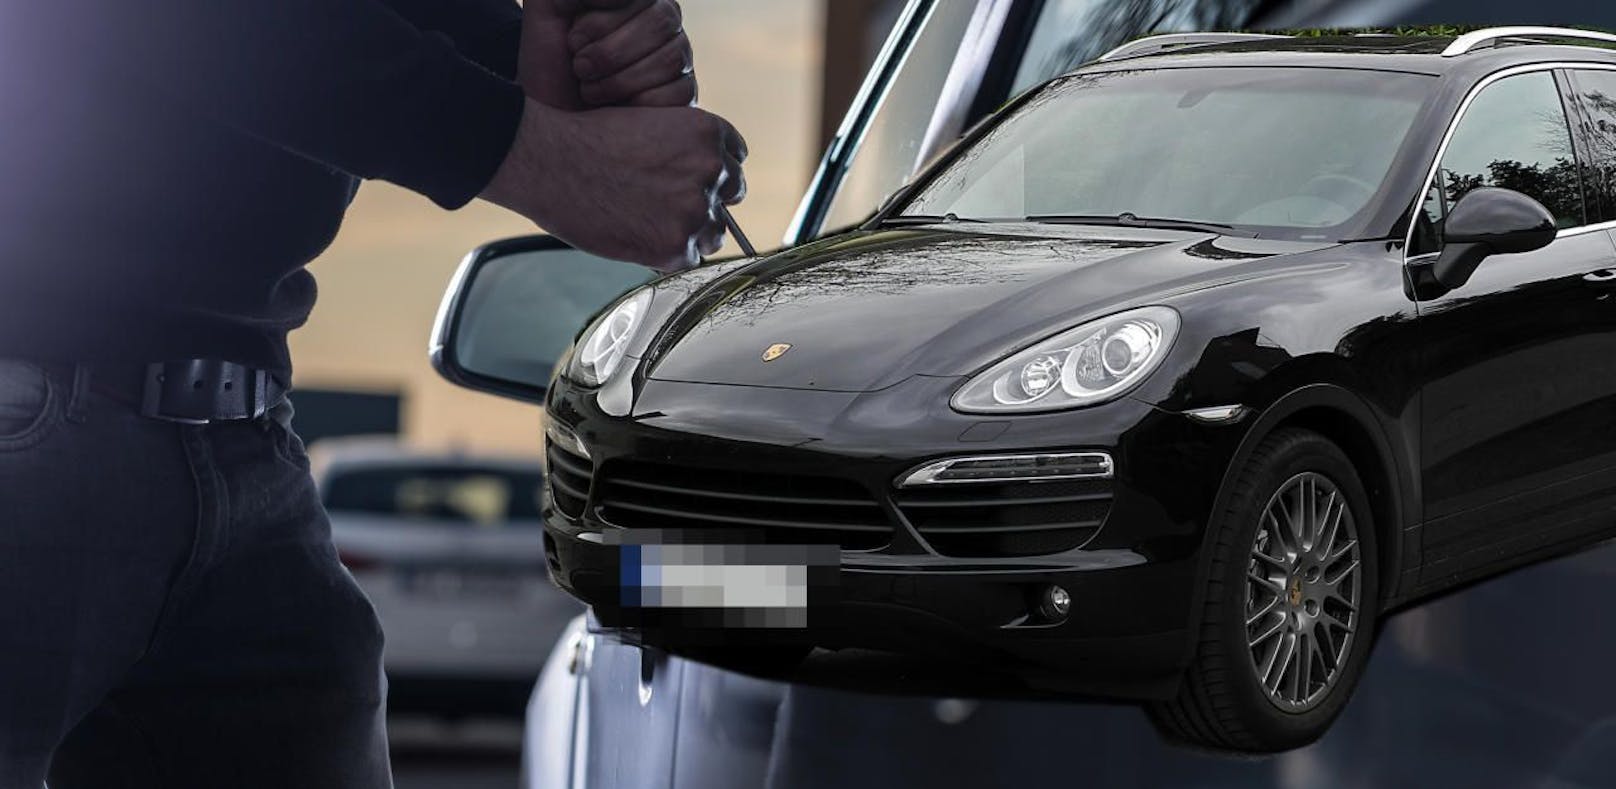 Der Porsche Cayenne eines Mödlingers wechselte jetzt Besitzer  abgesprochen war die Übergabe aber nicht.